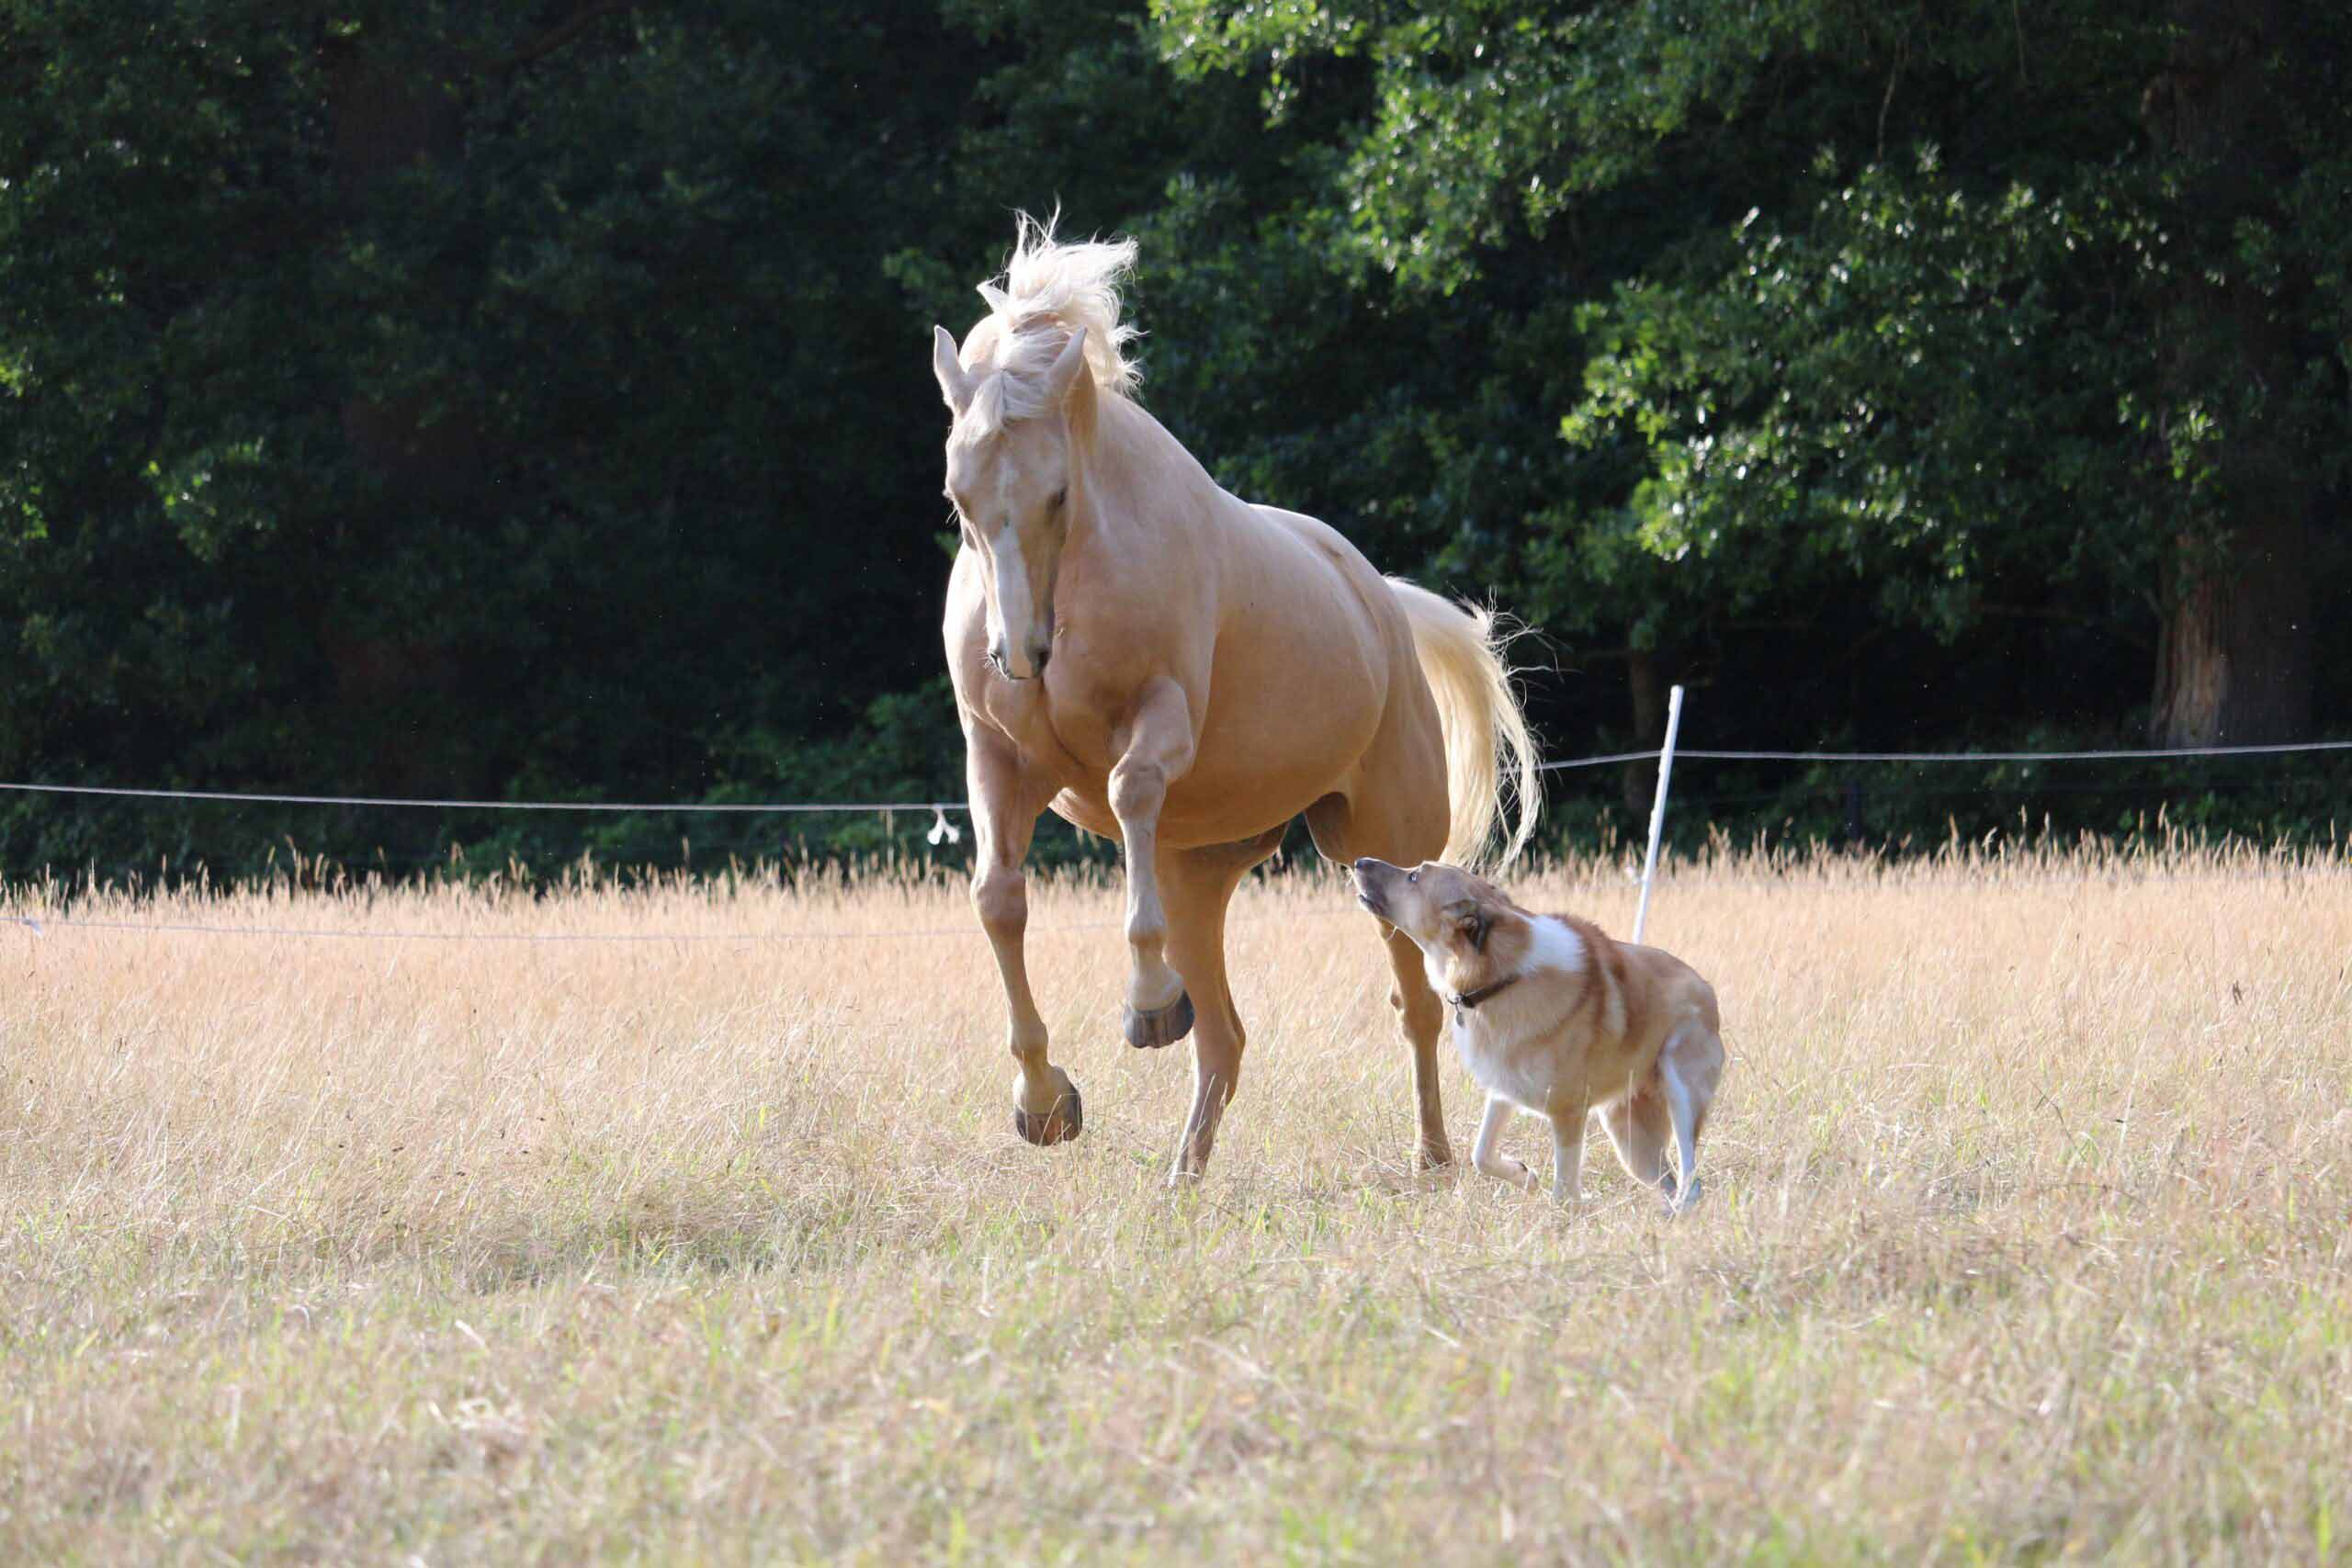 Pferd und Hund tollen nebeneinander, auf einer Weide in sehr vertrauter Harmonie.